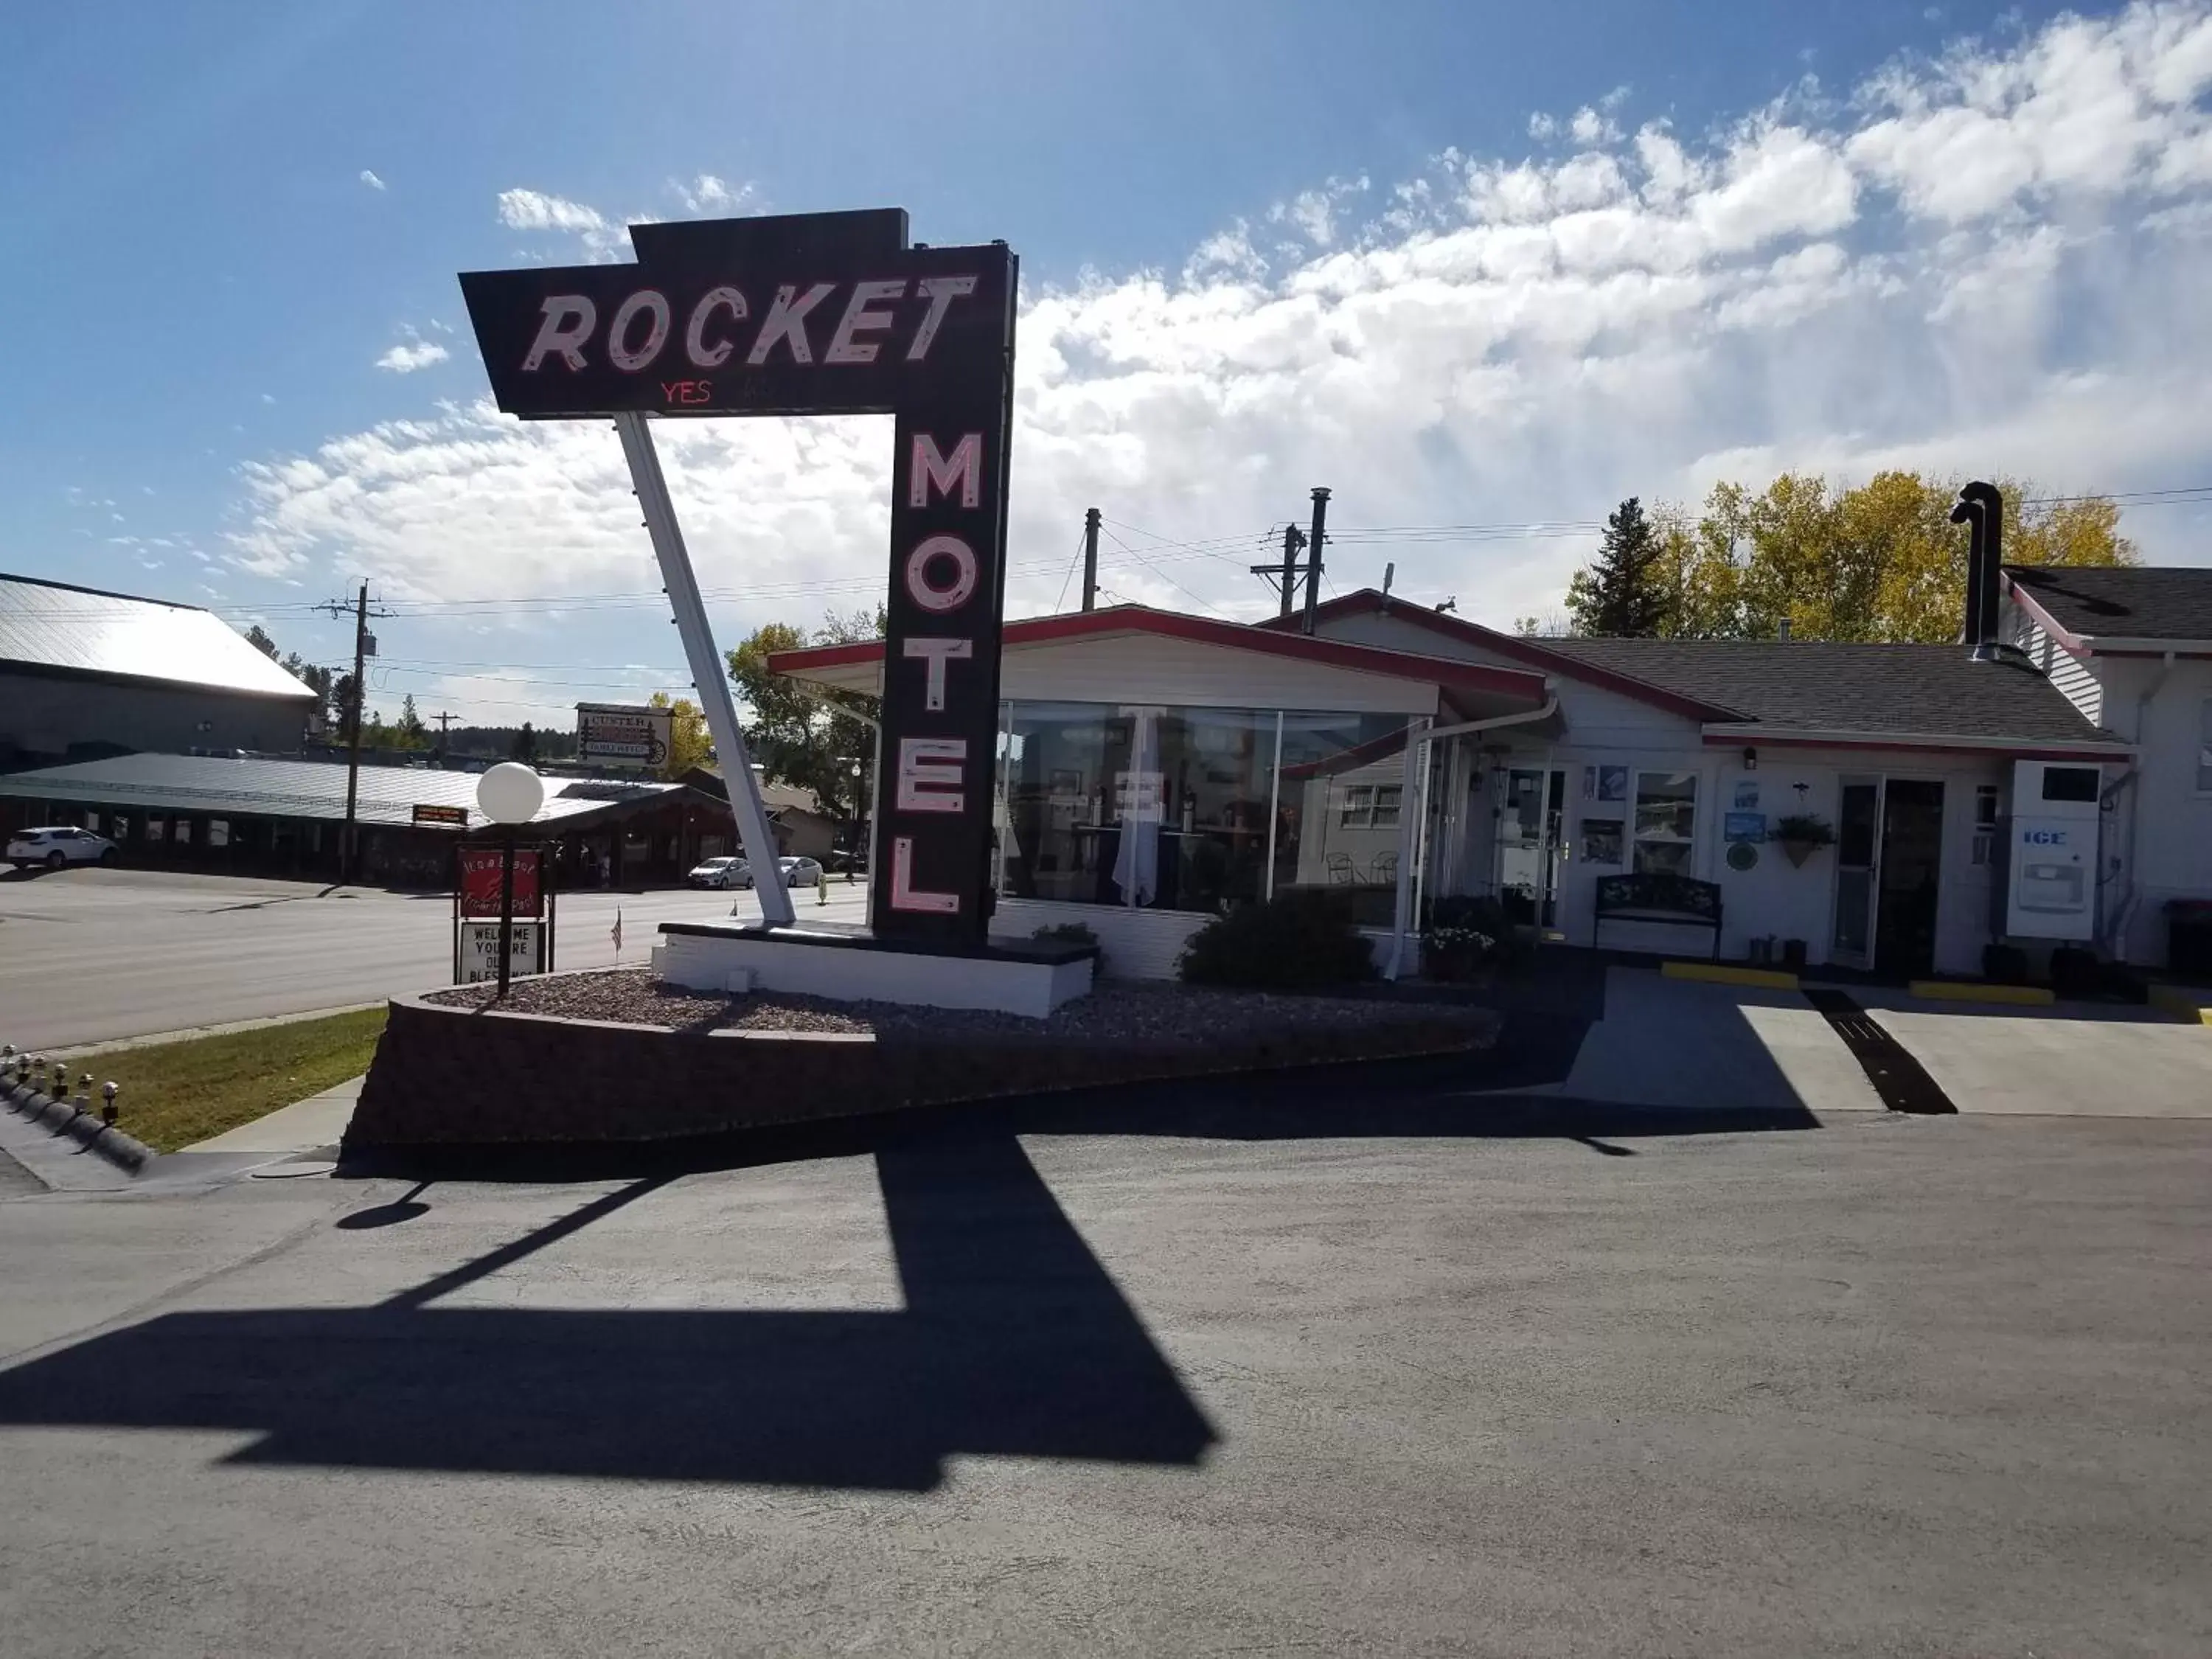 Property logo or sign in Rocket Motel